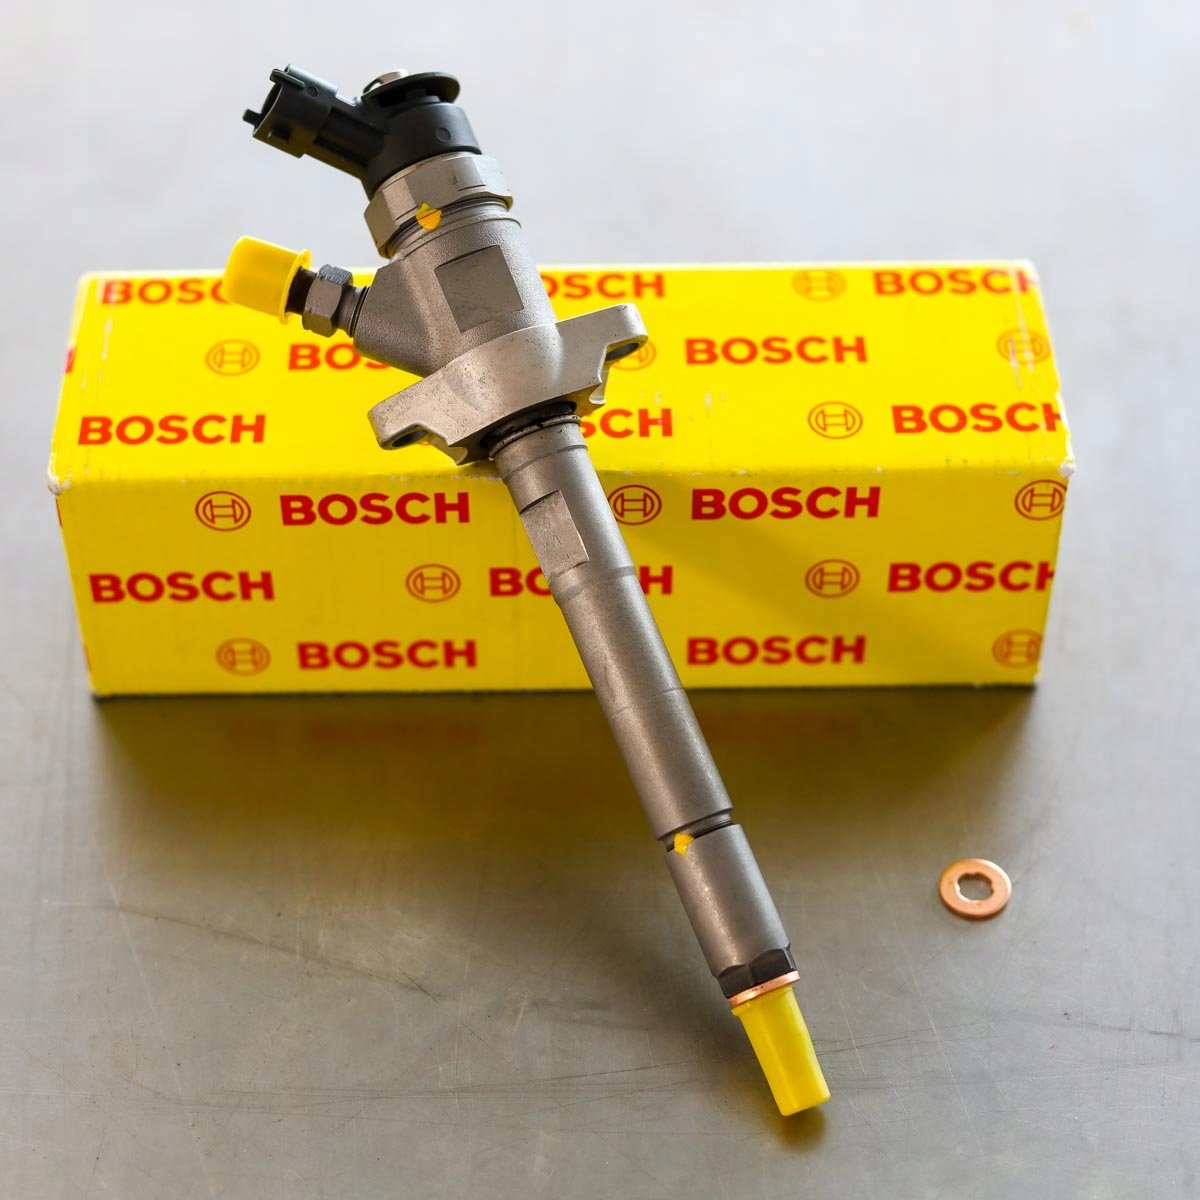 Wtryskiwacz Bosch naprawiony gotowy do wysyłki do Klienta z gwarancją na 2 lata - niska cena